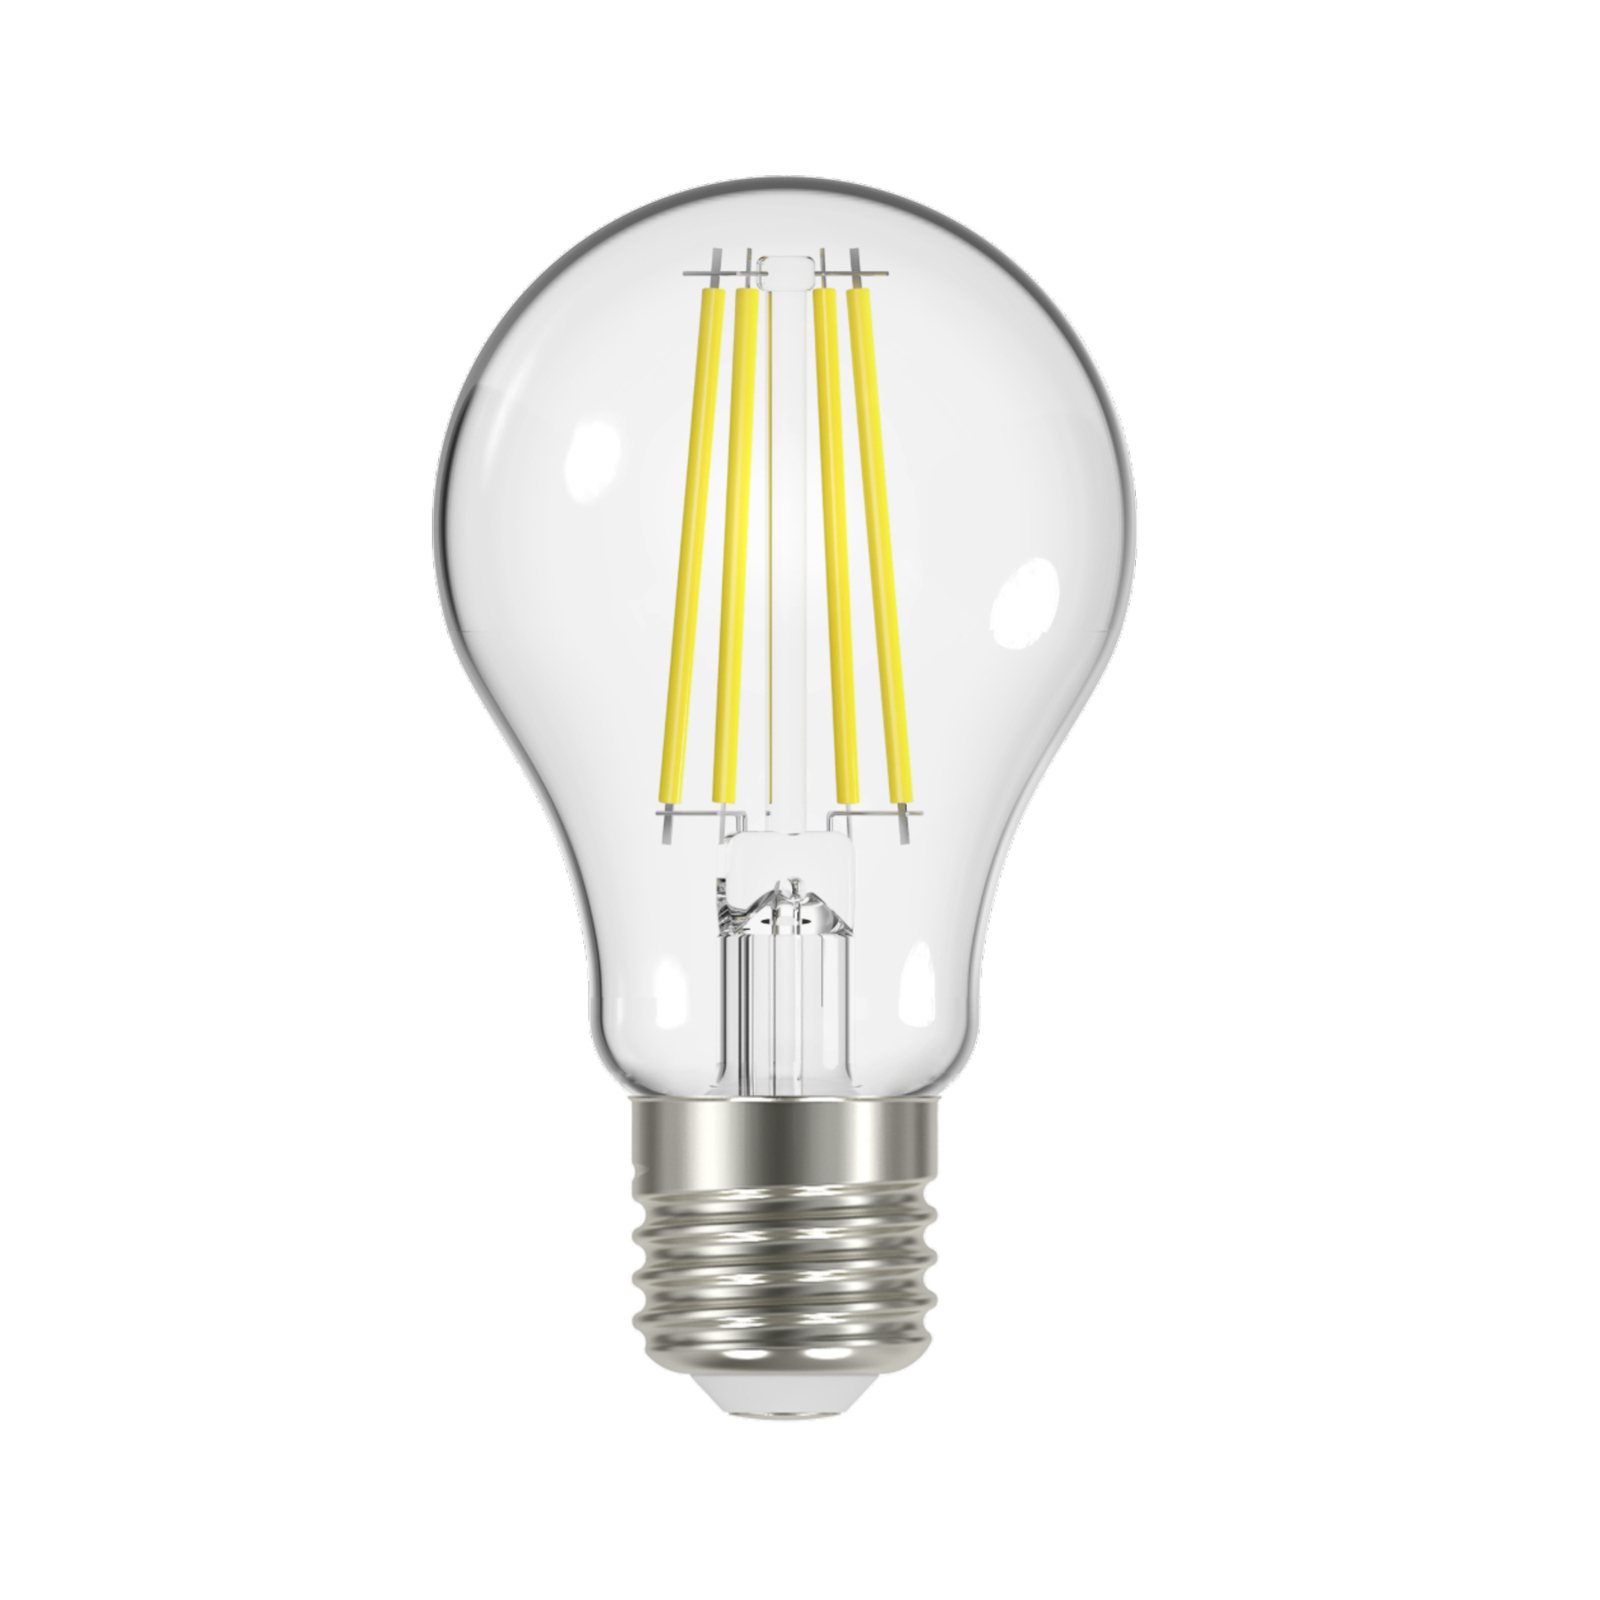 LED-Filamentlampe E27 3,8W 3.000K, 806 Lumen, klar